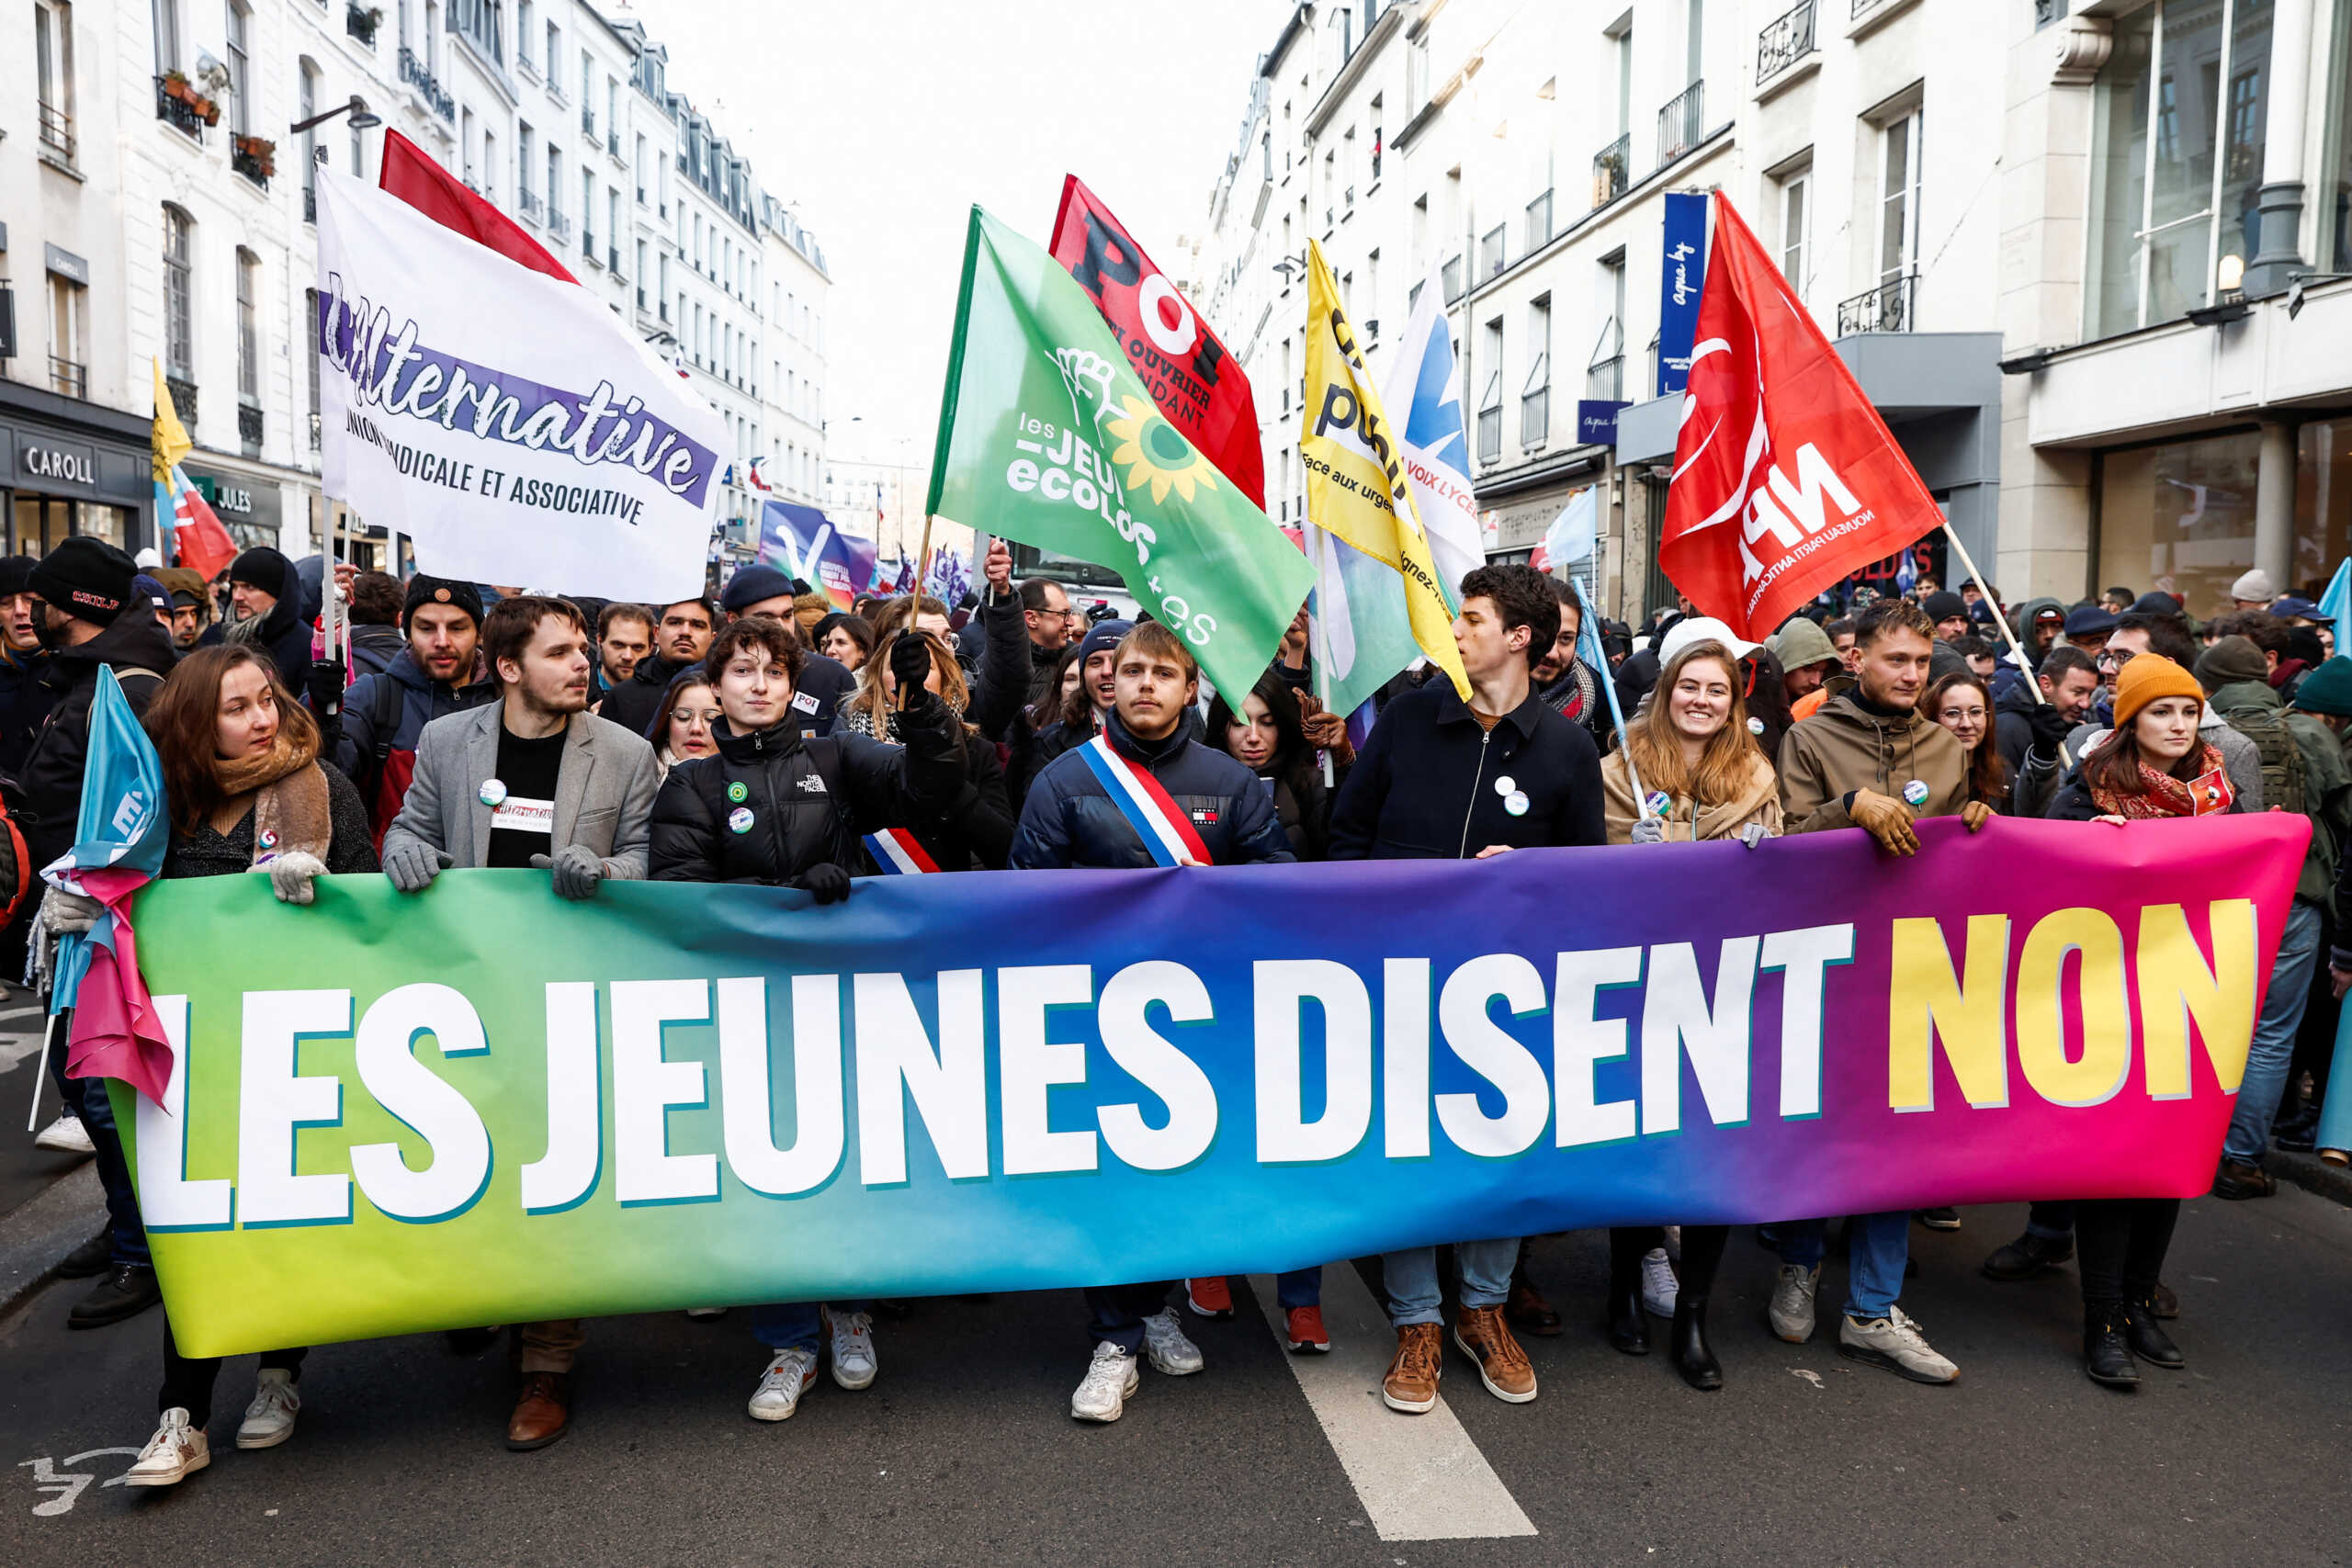 Γαλλία: Σε νέες διαδηλώσεις και απεργίες για αύριο καλούν τα συνδικάτα τους εργαζόμενους